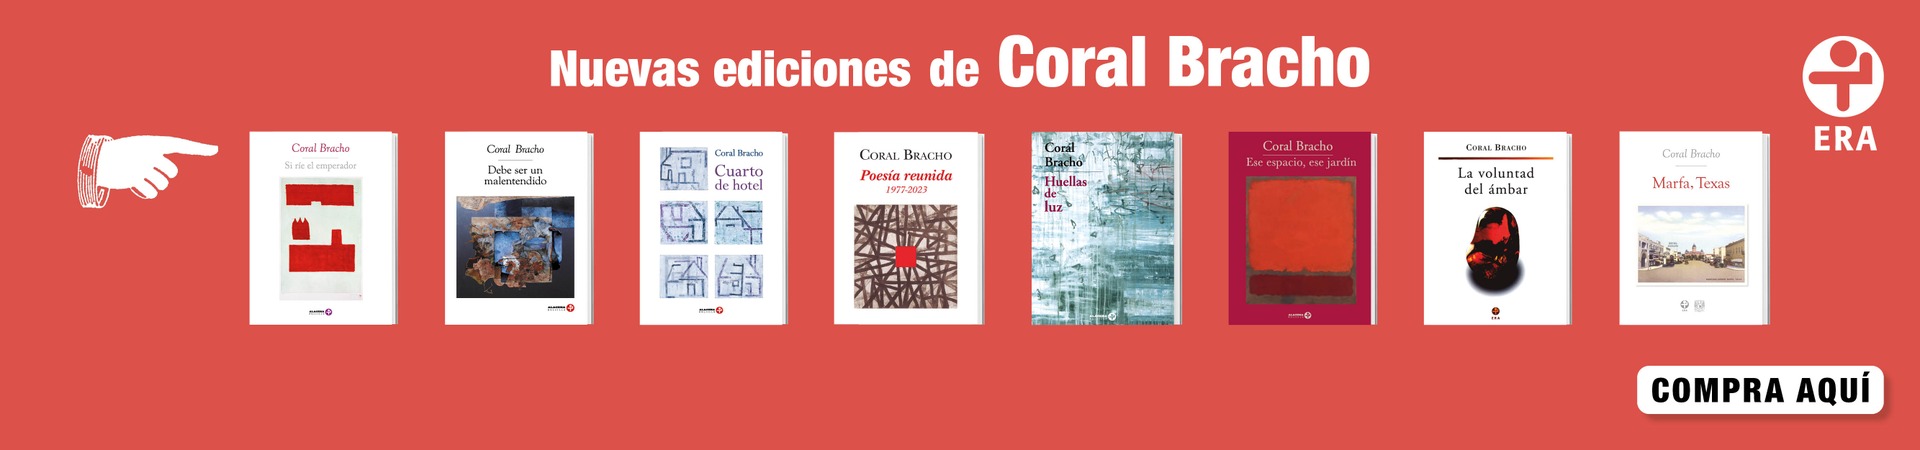 Novedades Coral Bracho